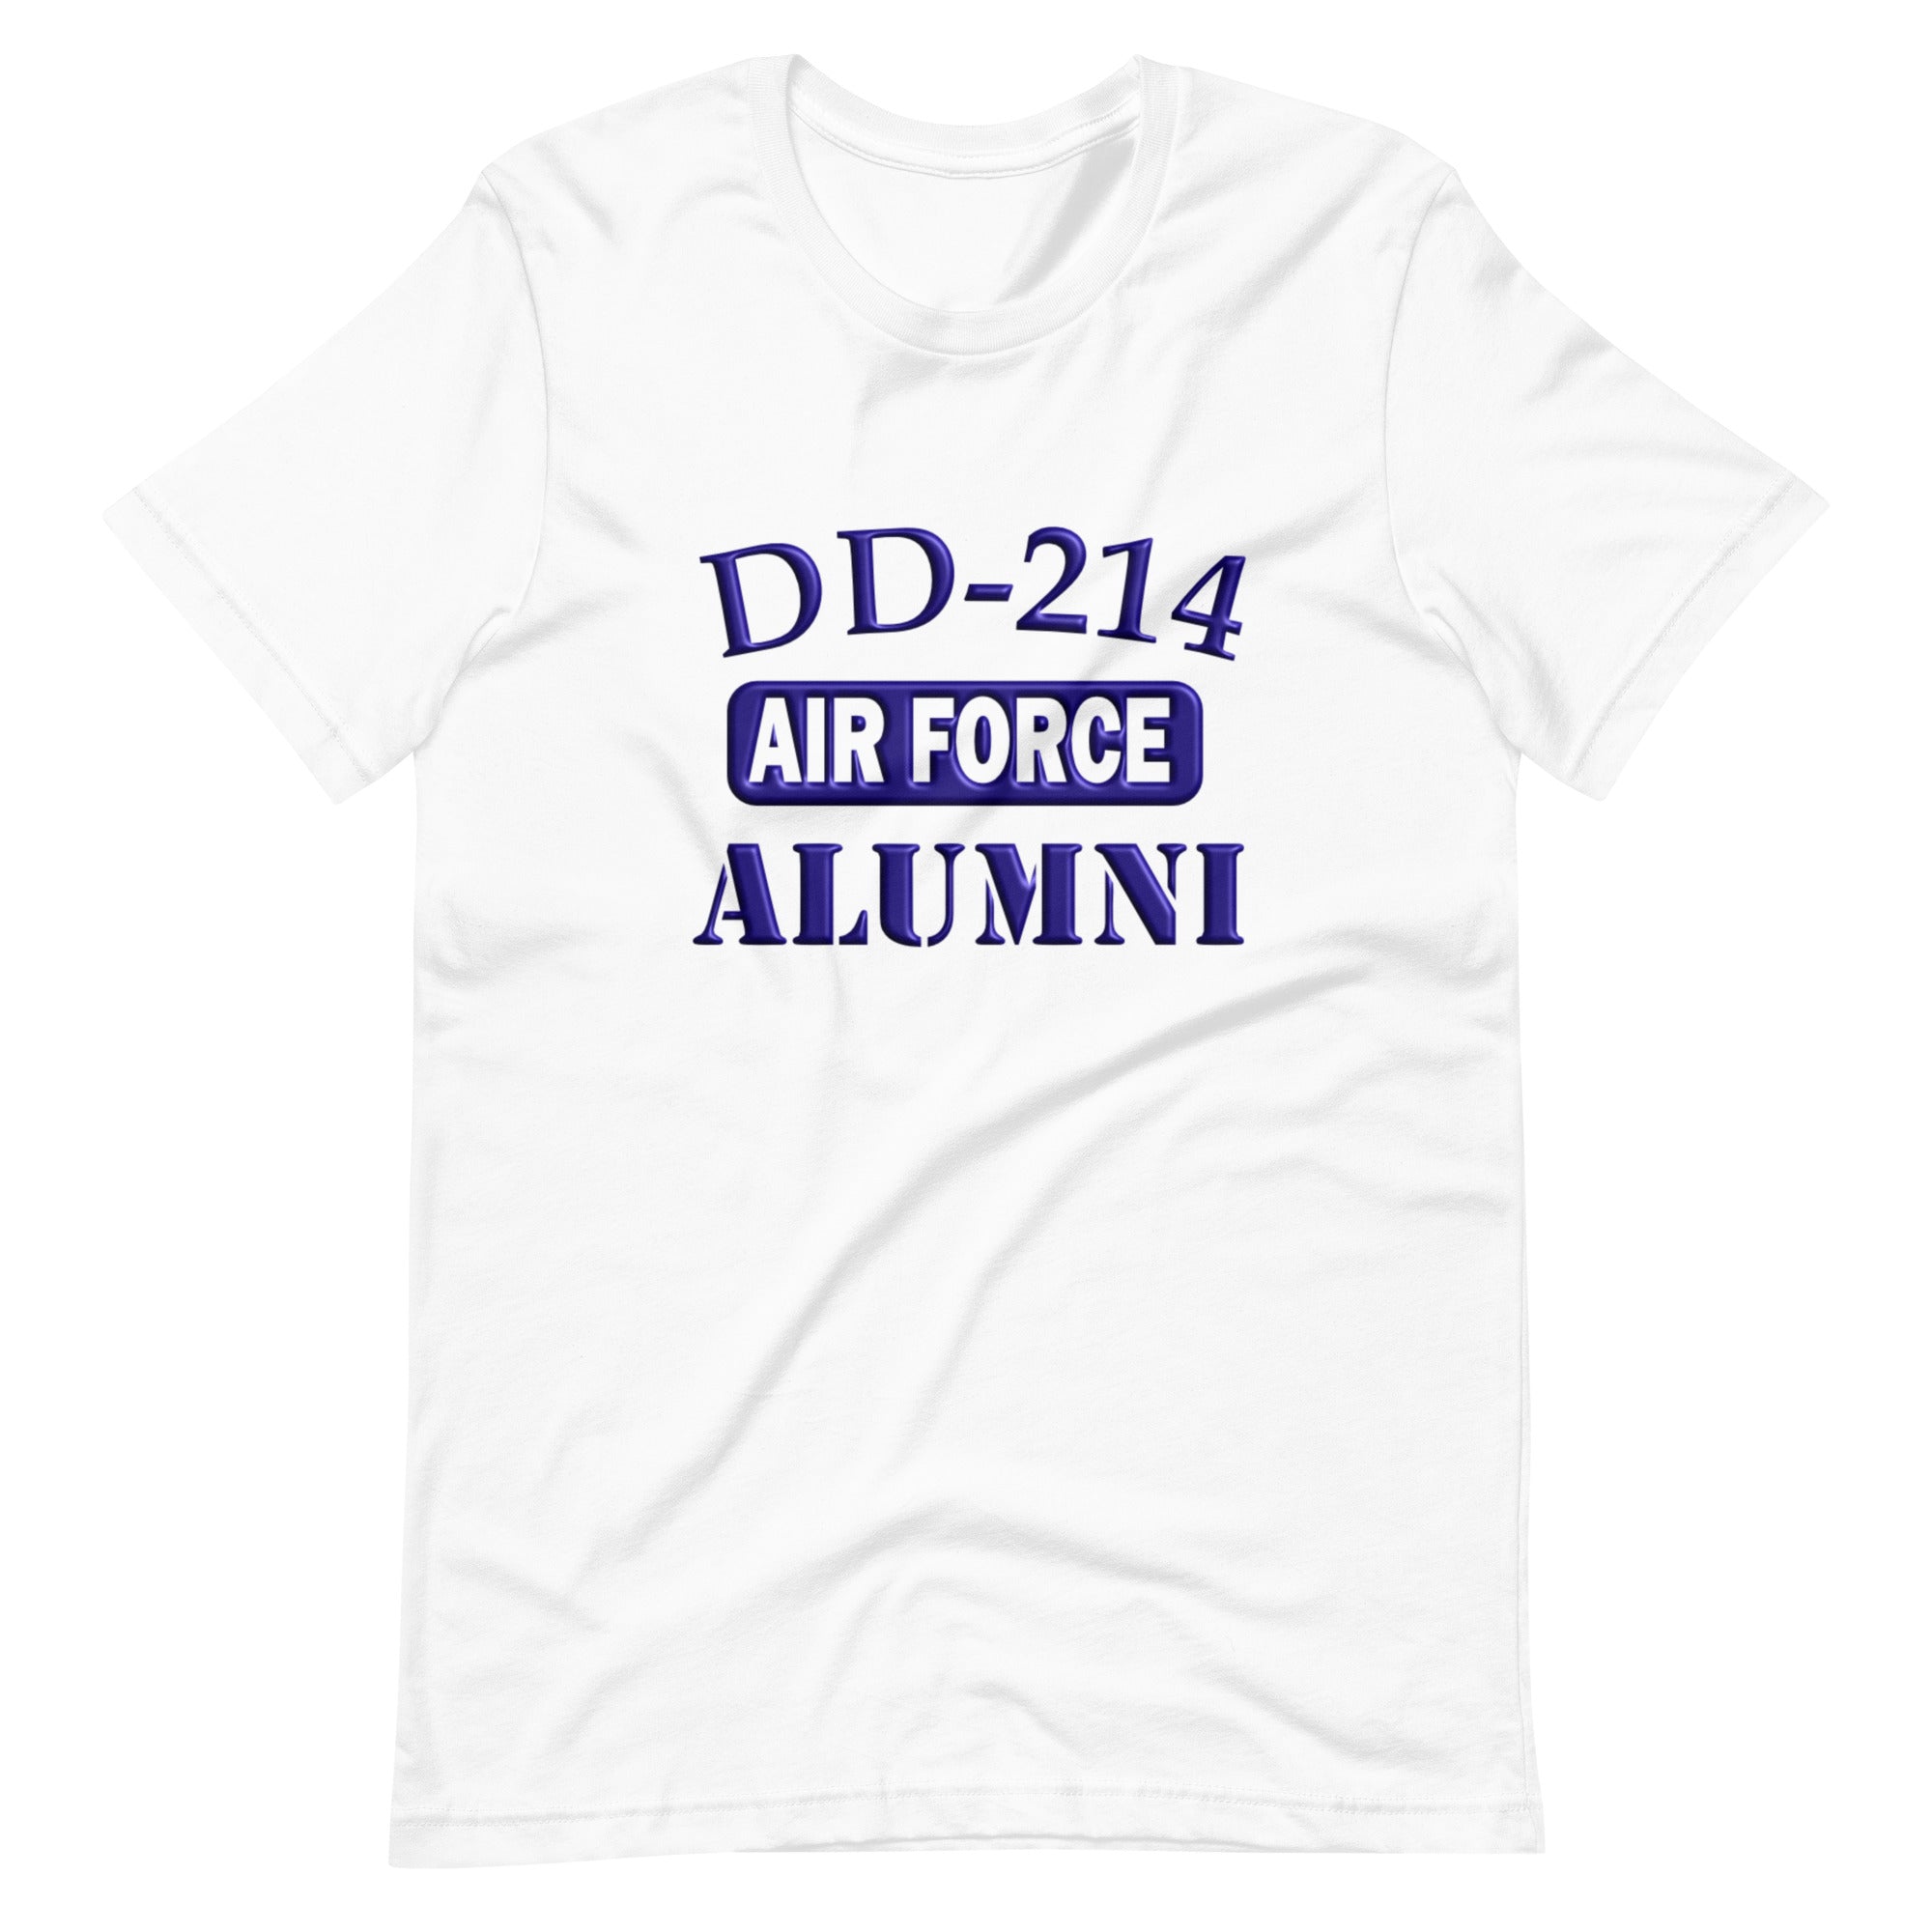 Airforce DD-214 Alumni Tee